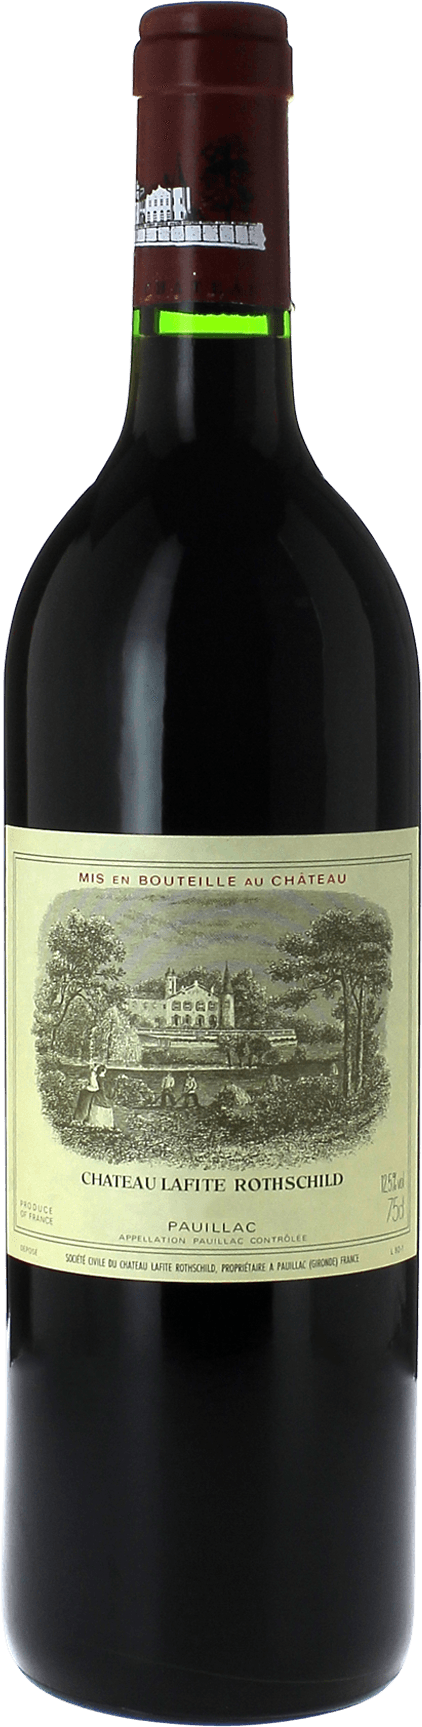 Lafite rothschild pauillac 2016 1er Grand cru class Pauillac, Bordeaux rouge